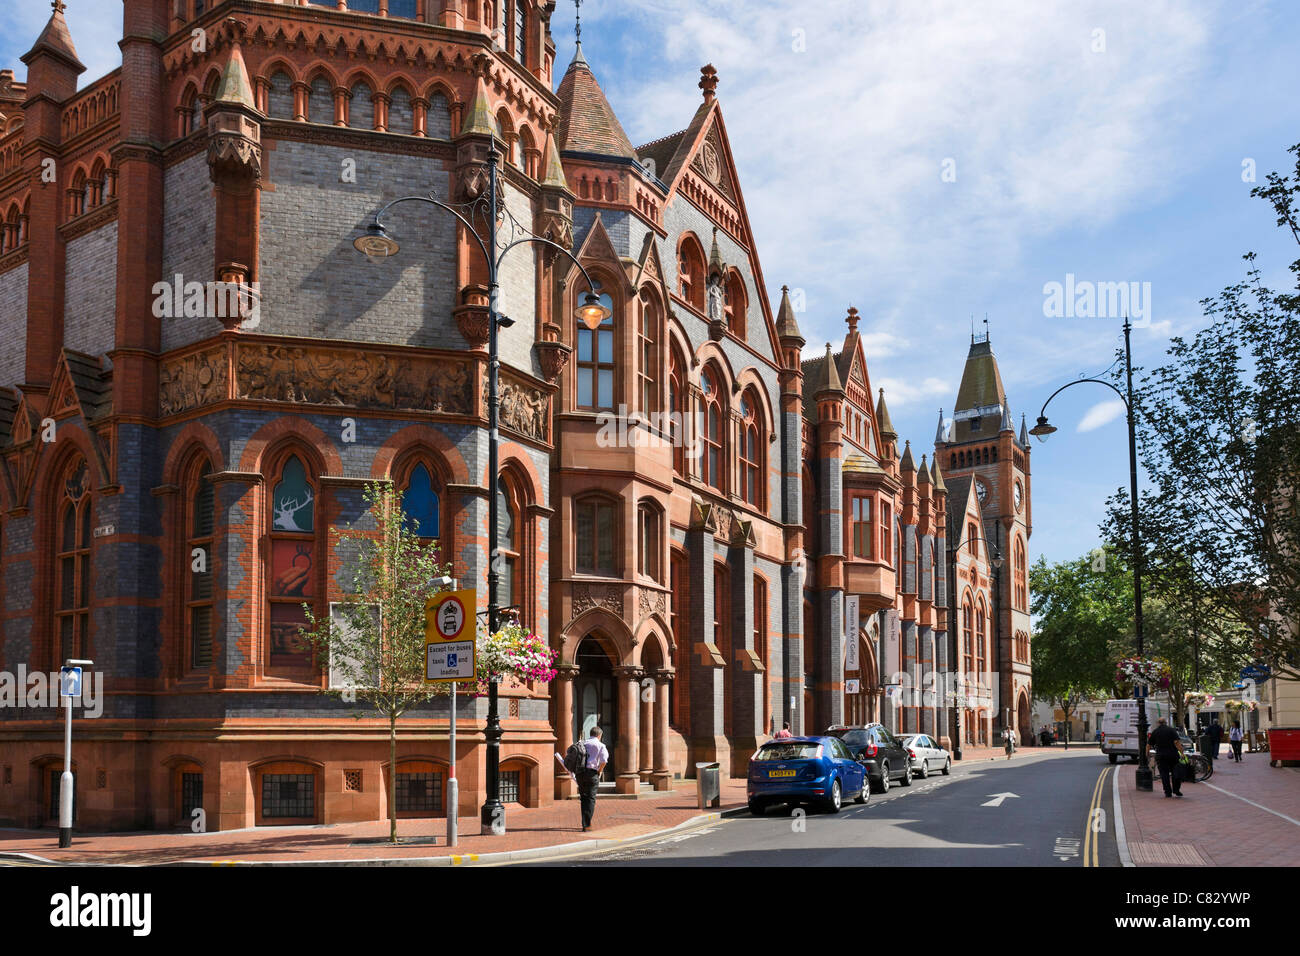 L'hôtel de ville, musée et galerie d'Art, Blagrave Street, Reading, Berkshire, England, UK Banque D'Images